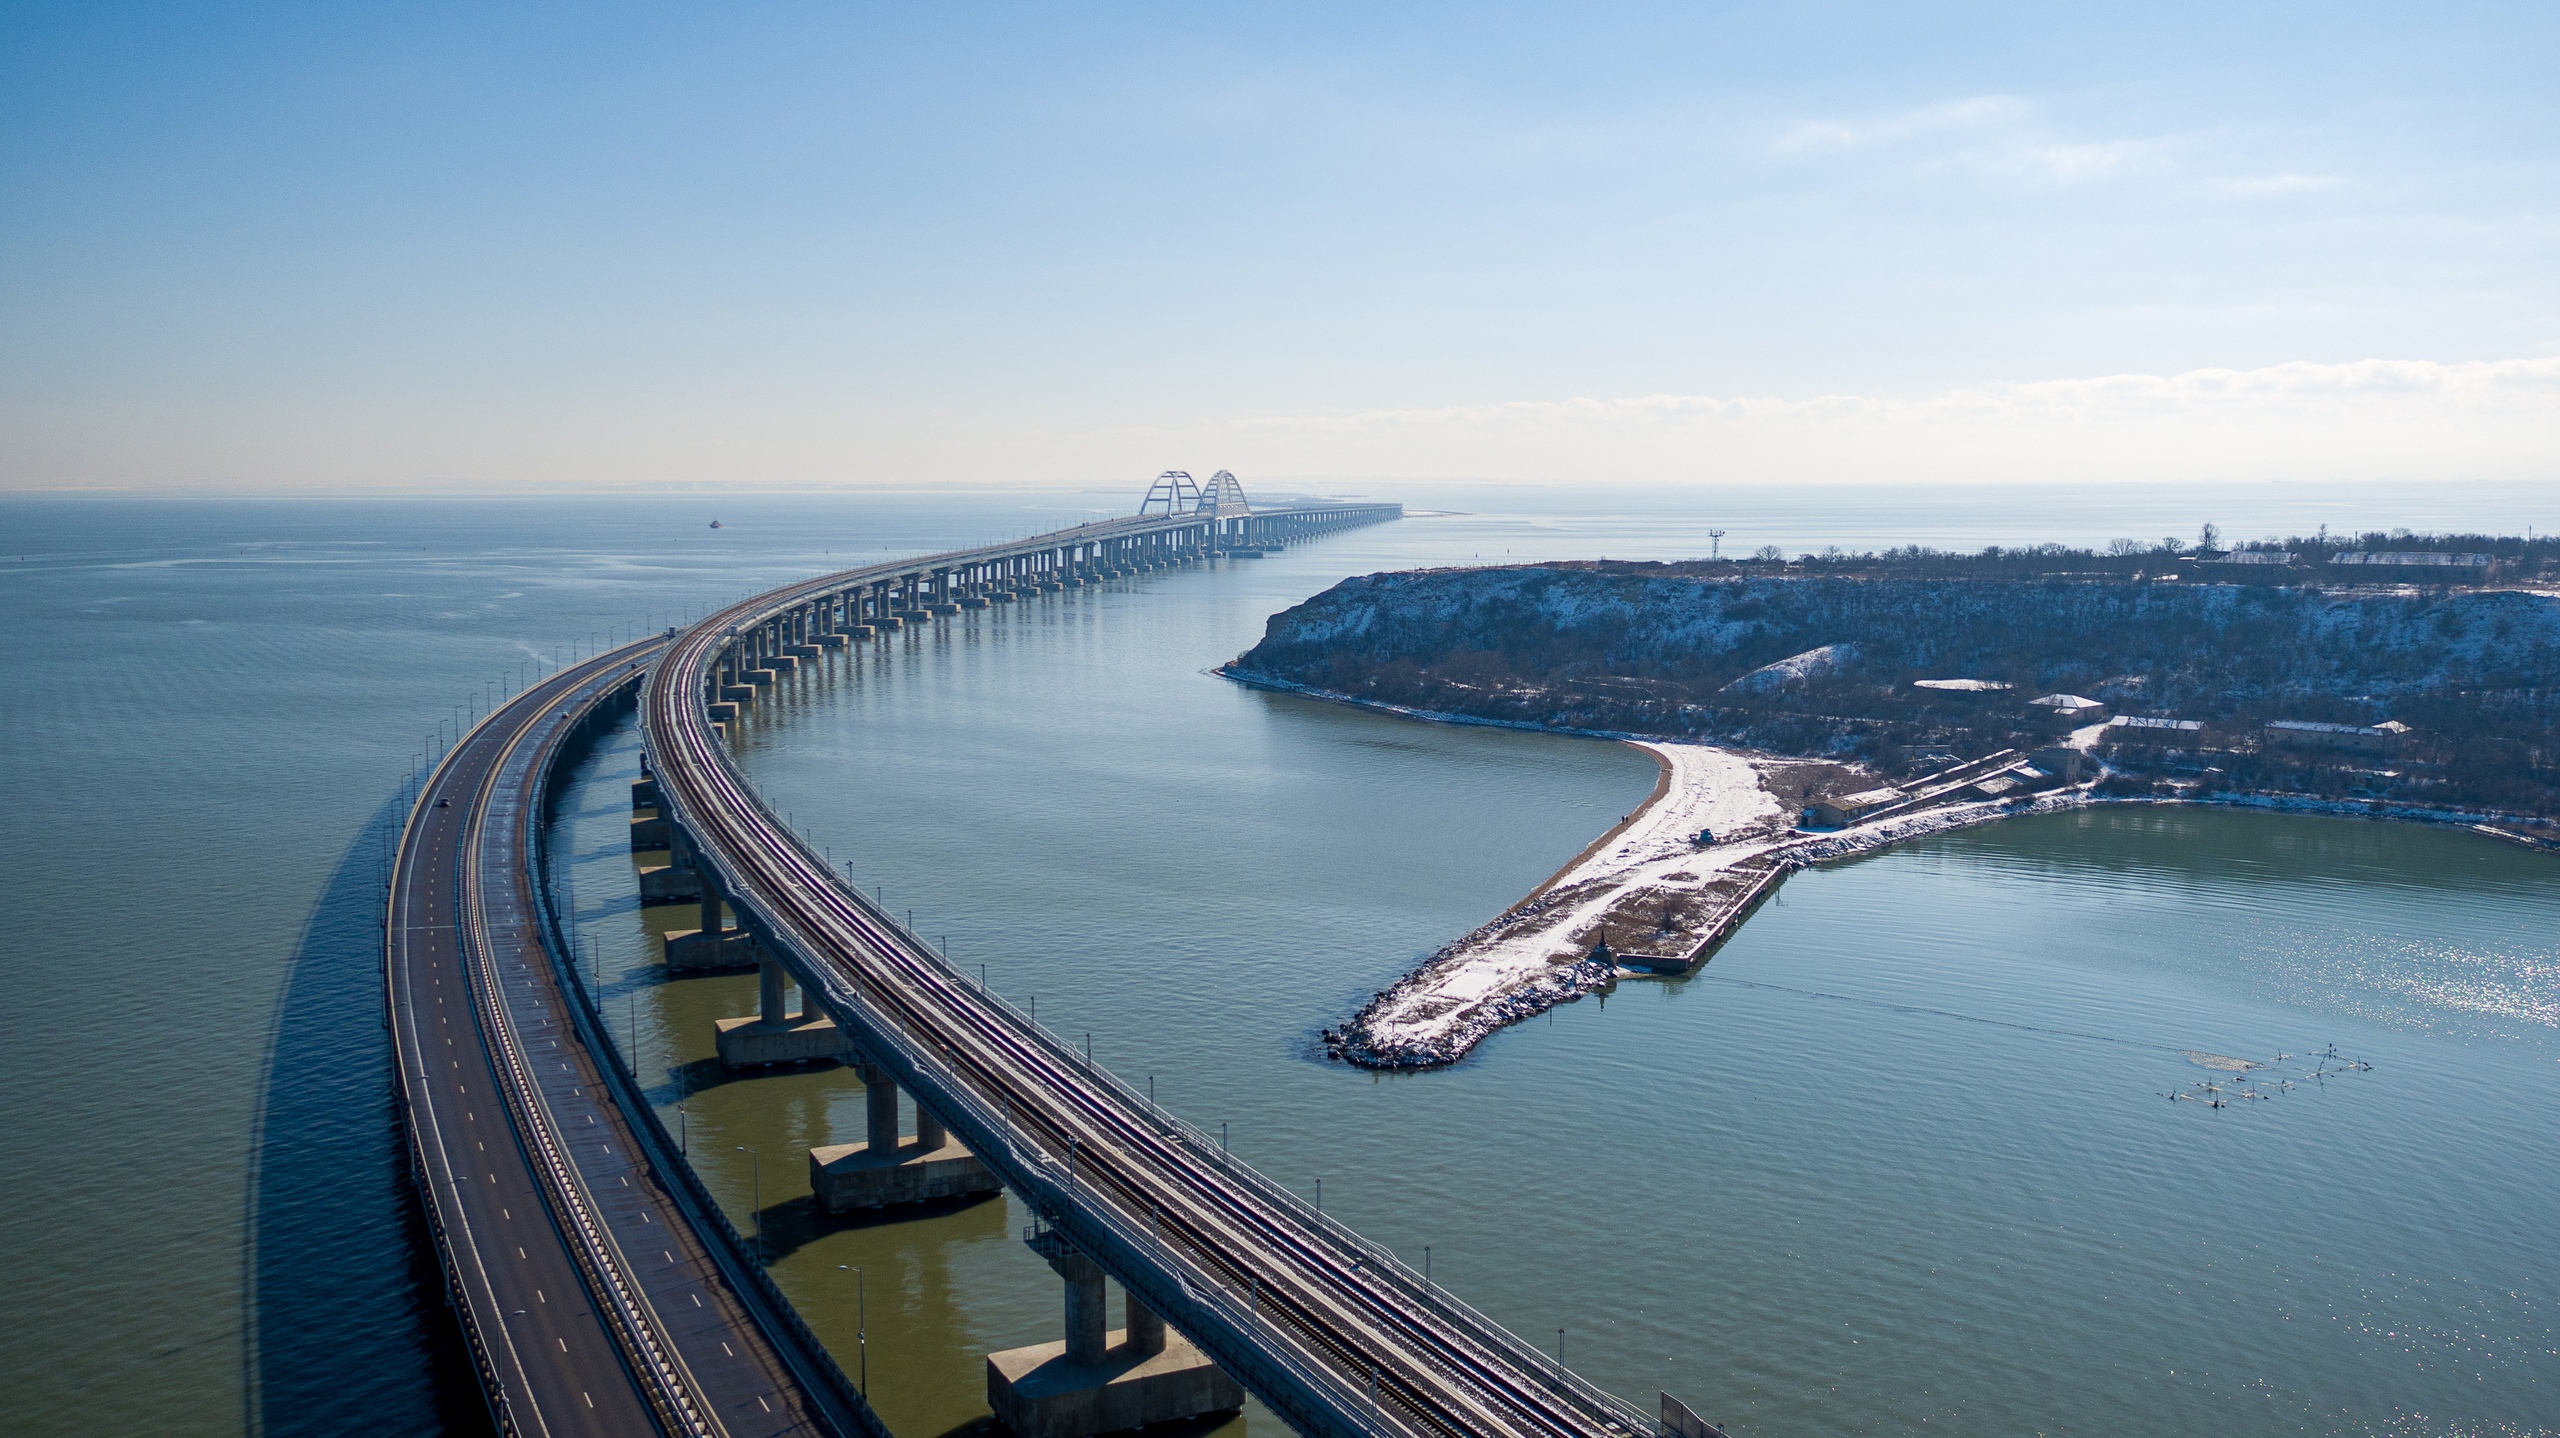 Мост через Керченский пролив 2021